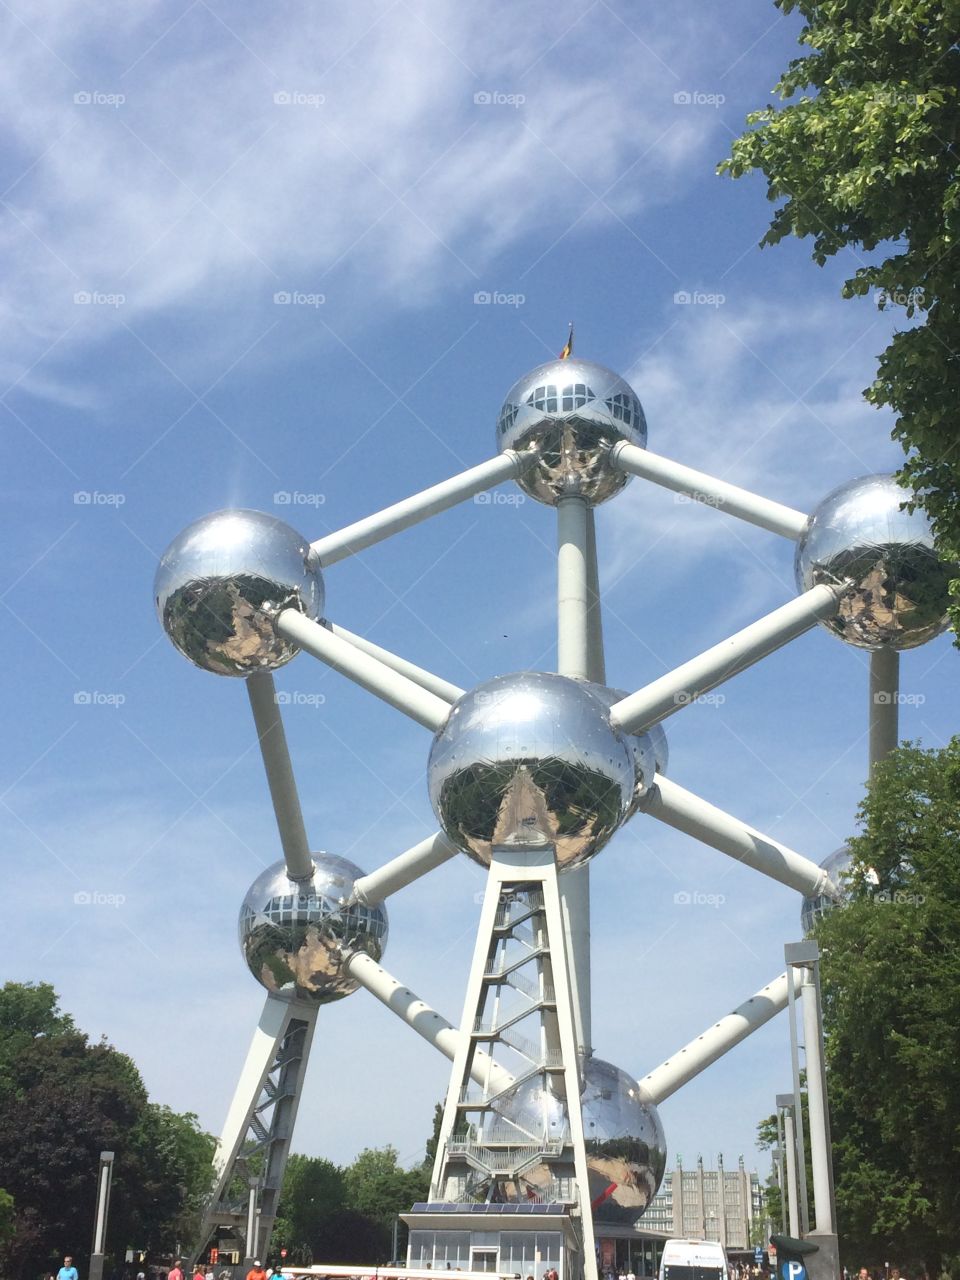 Atomium in Belgium. 